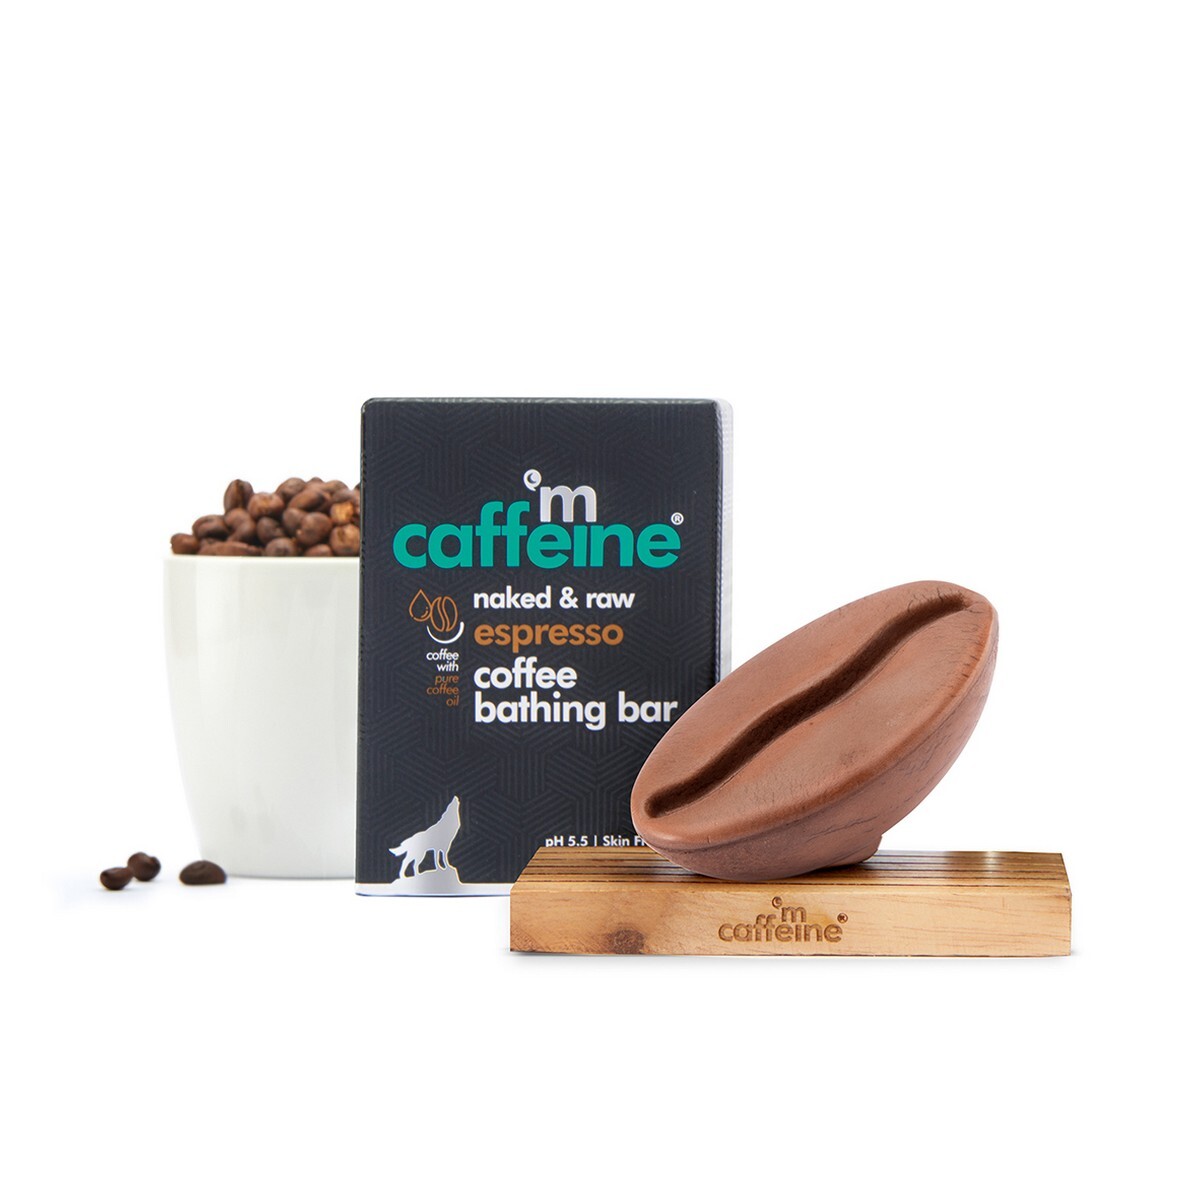 mCaffeine Espresso Coffee Bathing Bar (100 gm)